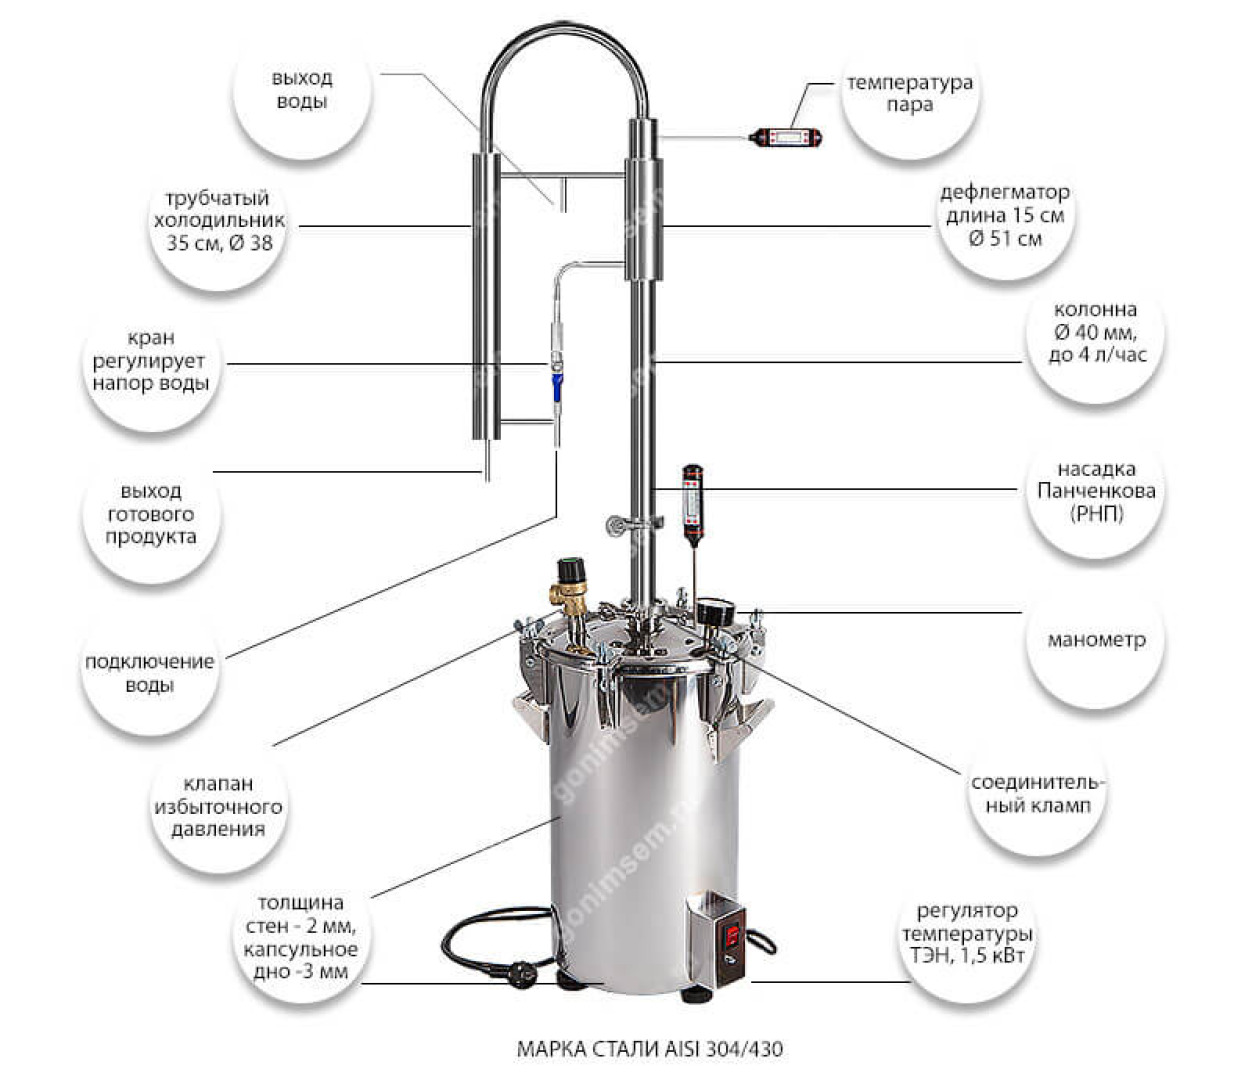 Самогонный аппарат холодильник вода. Схема подключения охлаждения самогонного аппарата. Схема подключения воды к самогонному аппарату. Схема подключения самогонного аппарата Люкссталь. Схема подключения самогонного аппарата к водопроводу.